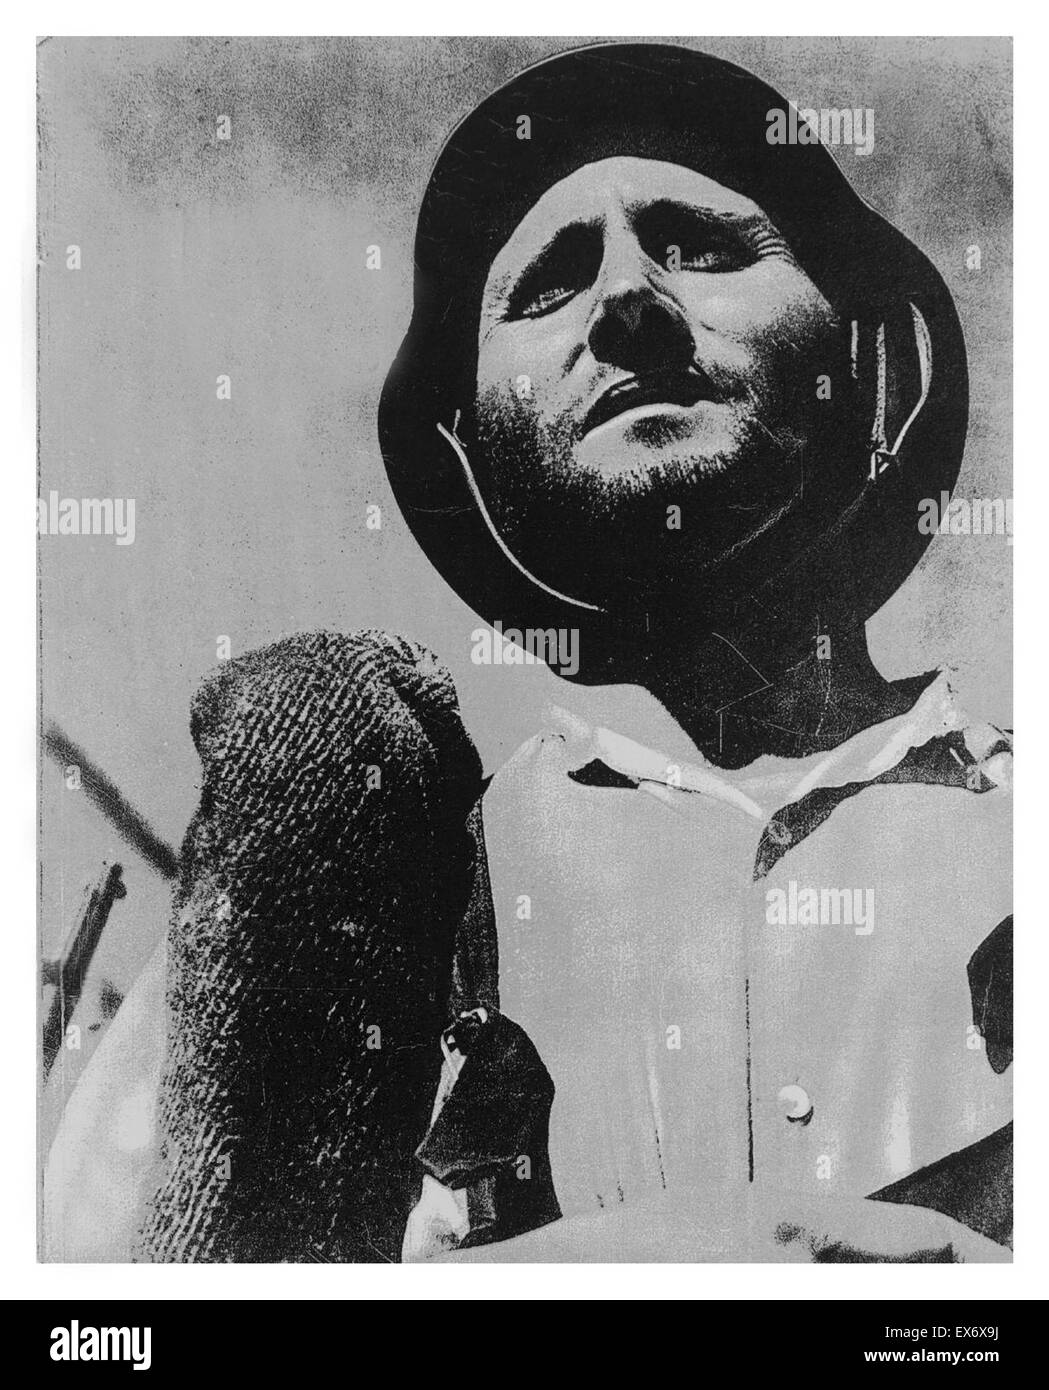 Guerra civile spagnola: soldato repubblicano, 1937 Foto Stock